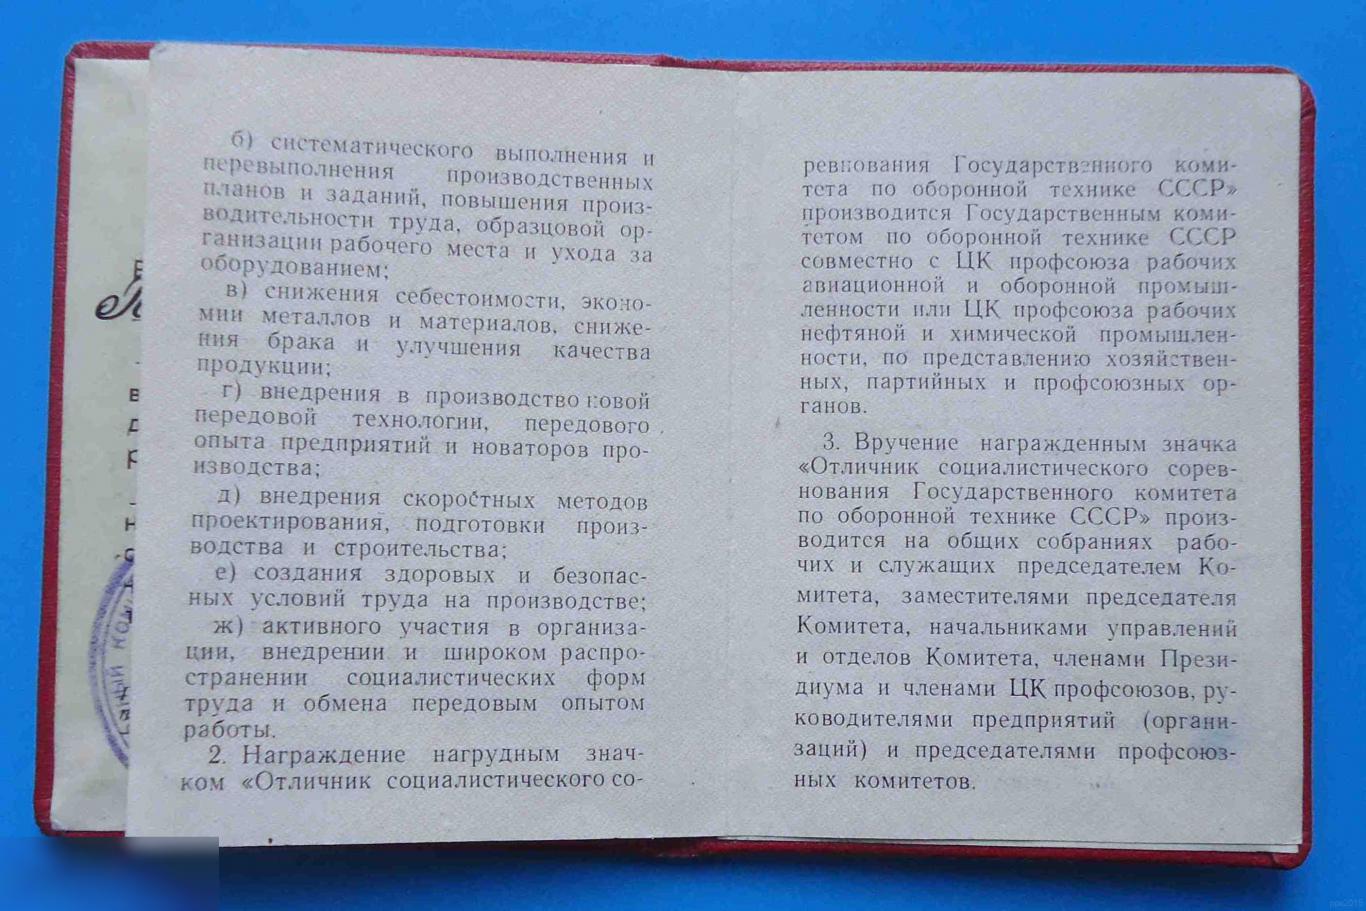 Удостоверение Отличник соц. соревнования Государственного комитета по оборонной технике СССР док 2